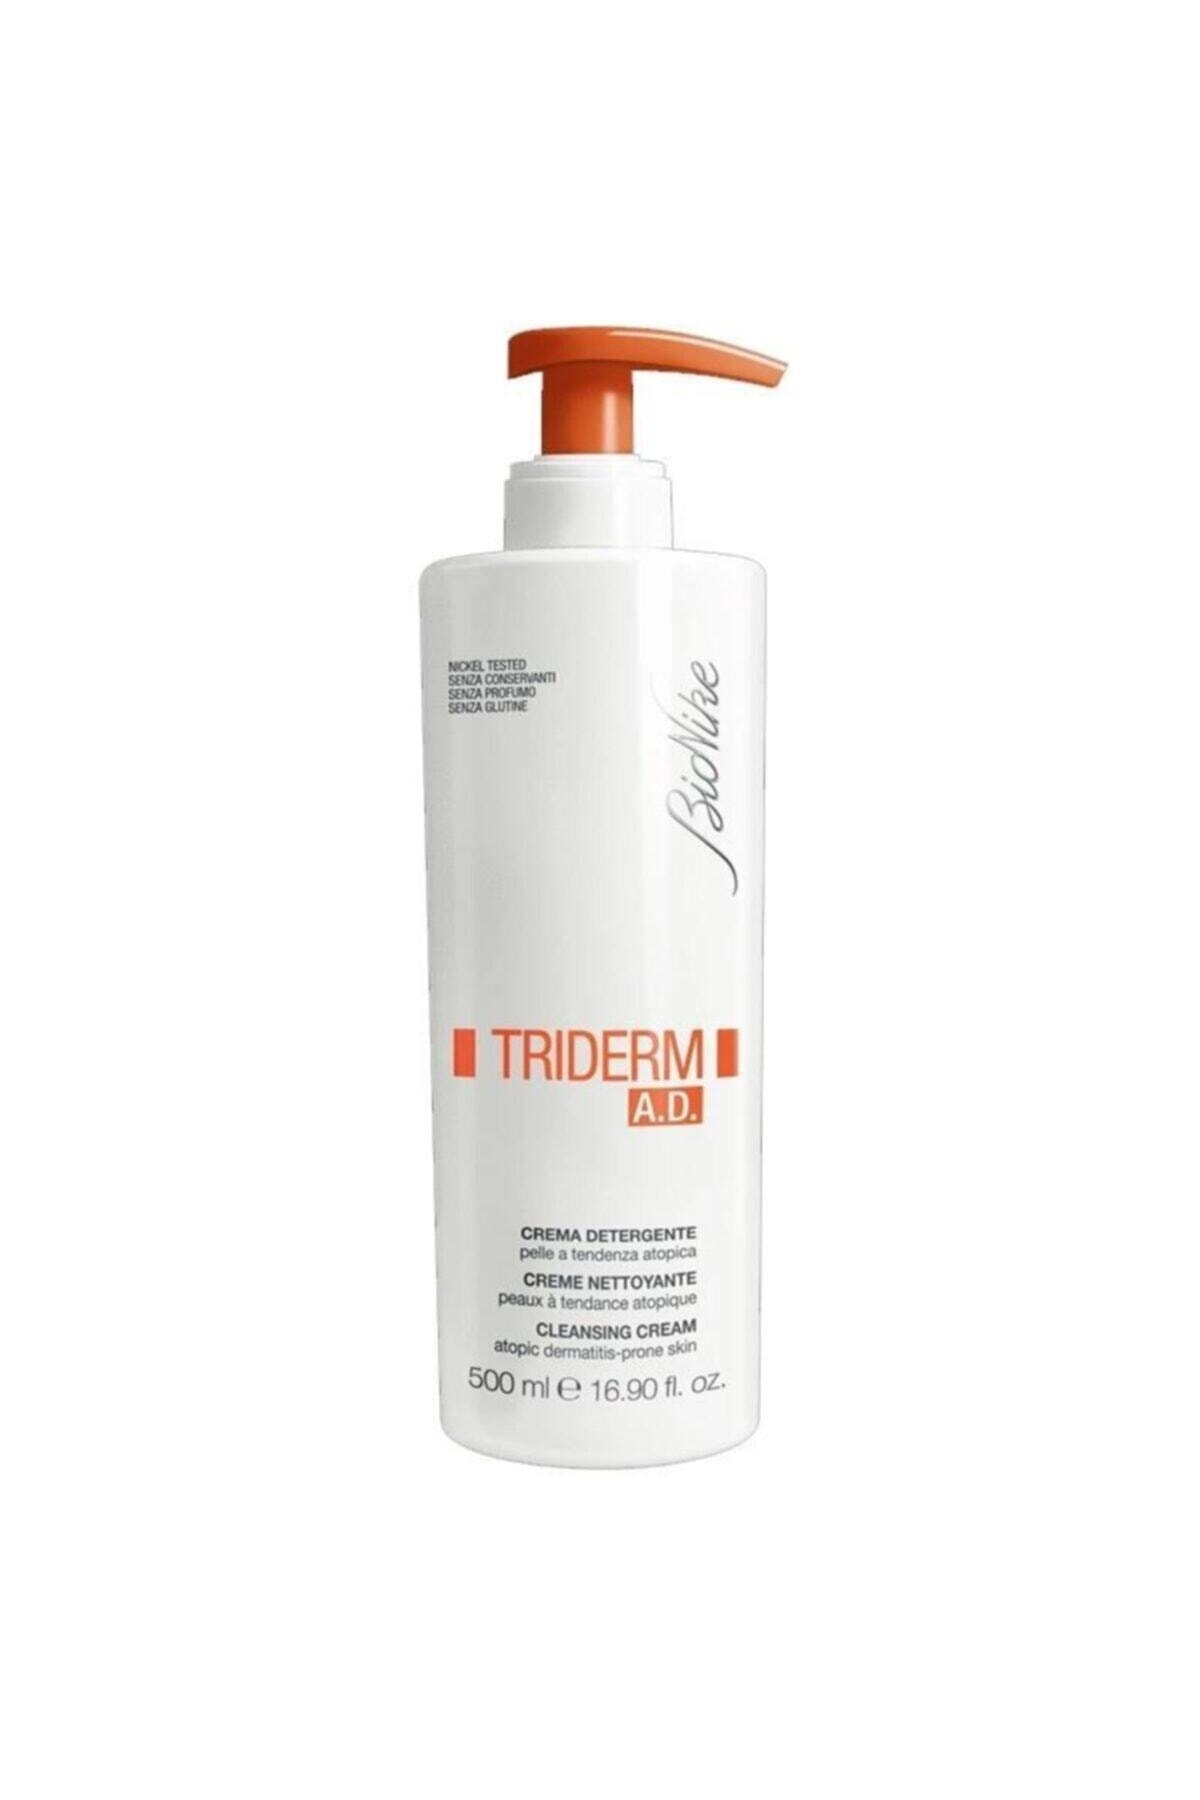 BioNike Triderm A.d. Cleansing Crean 500 ml